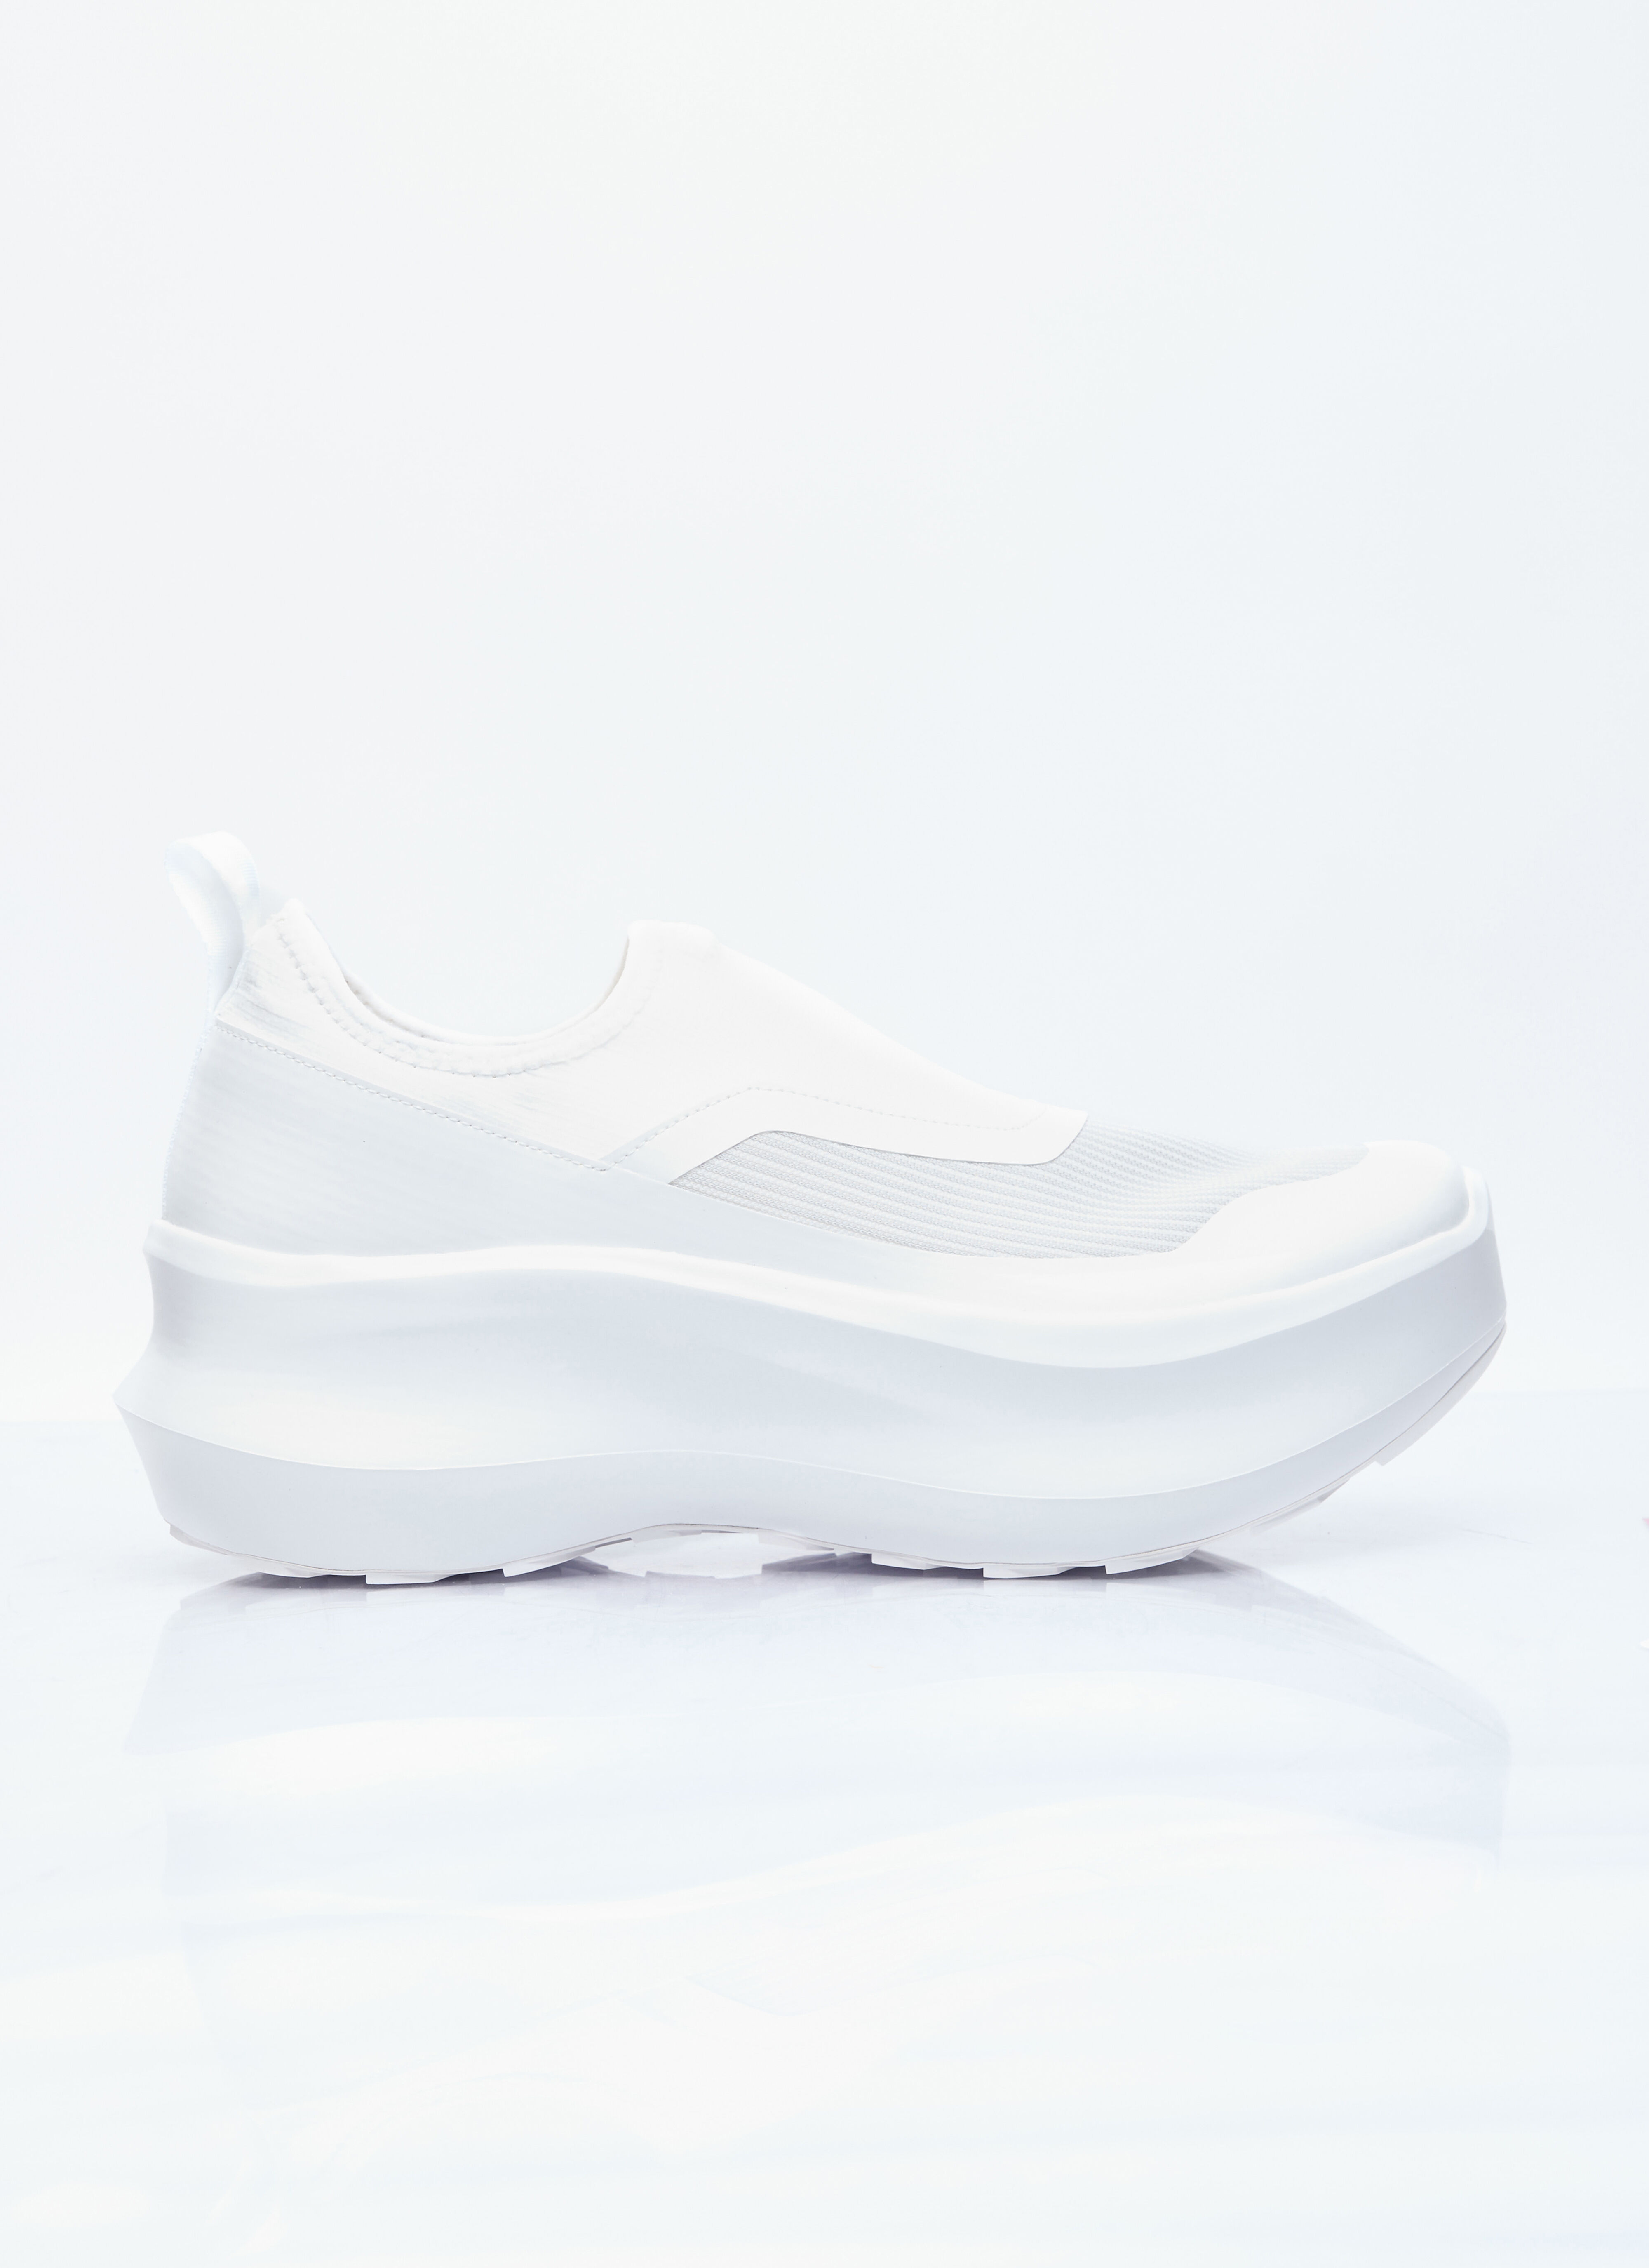 Comme des Garçons Homme Plus x Nike Slip-On Platform Sneakers Black cgh0356001